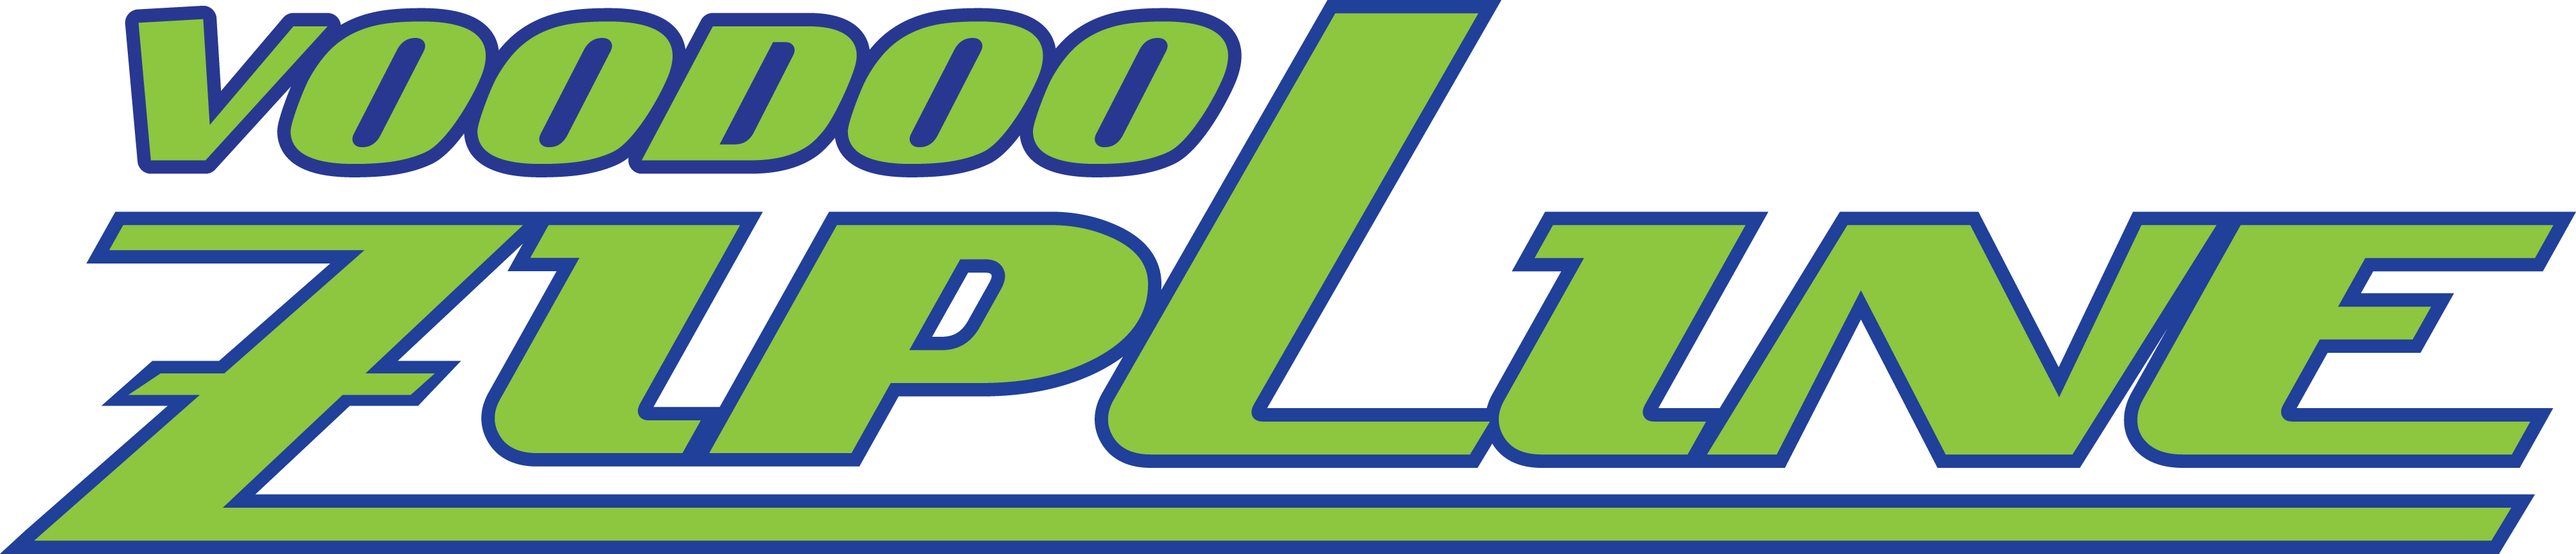 Vegas Voodoo Zipline Logo (4010x862)